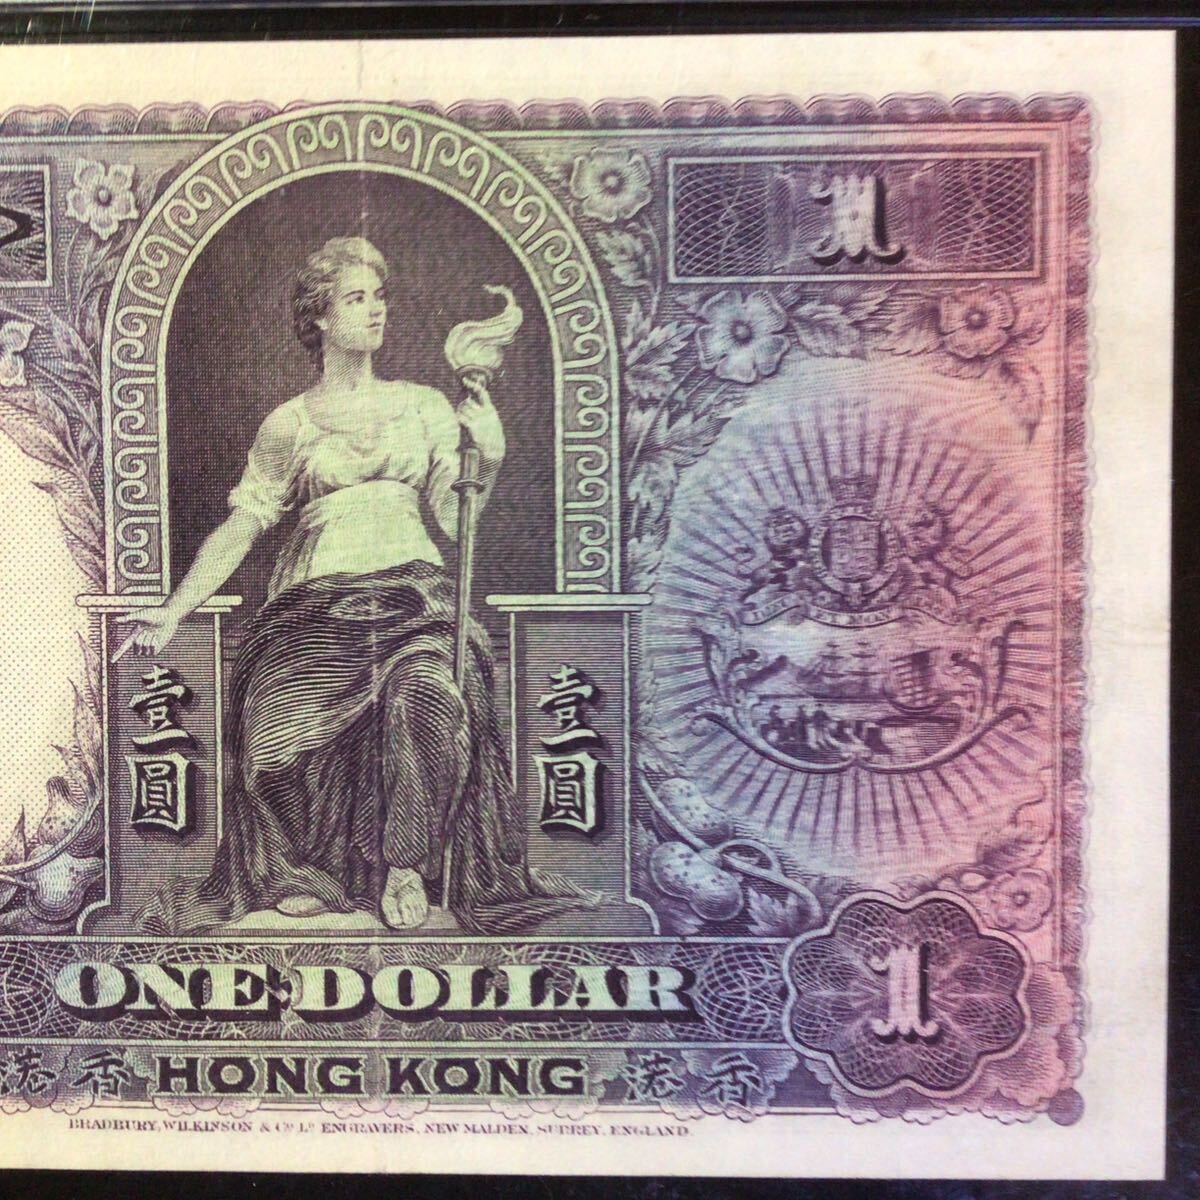 World Banknote Grading HONG KONG《Hong Kong & Shanghai Banking Corp》1 Dollar【1935】『PMG Grading Choice About Uncirculated 50』_画像7